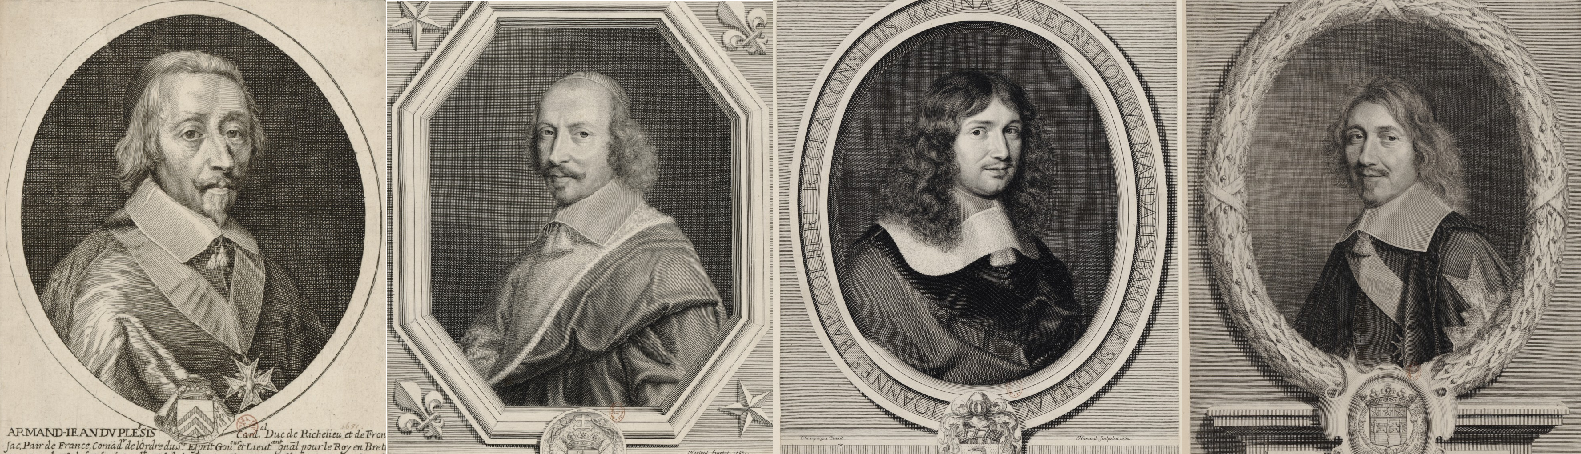 Imatge 3. Richelieu, Mazzarino, Colbert i Le Tellier  quatre dels principals superministres de Lluís XIV. Font Bibliothèque Nationale de France